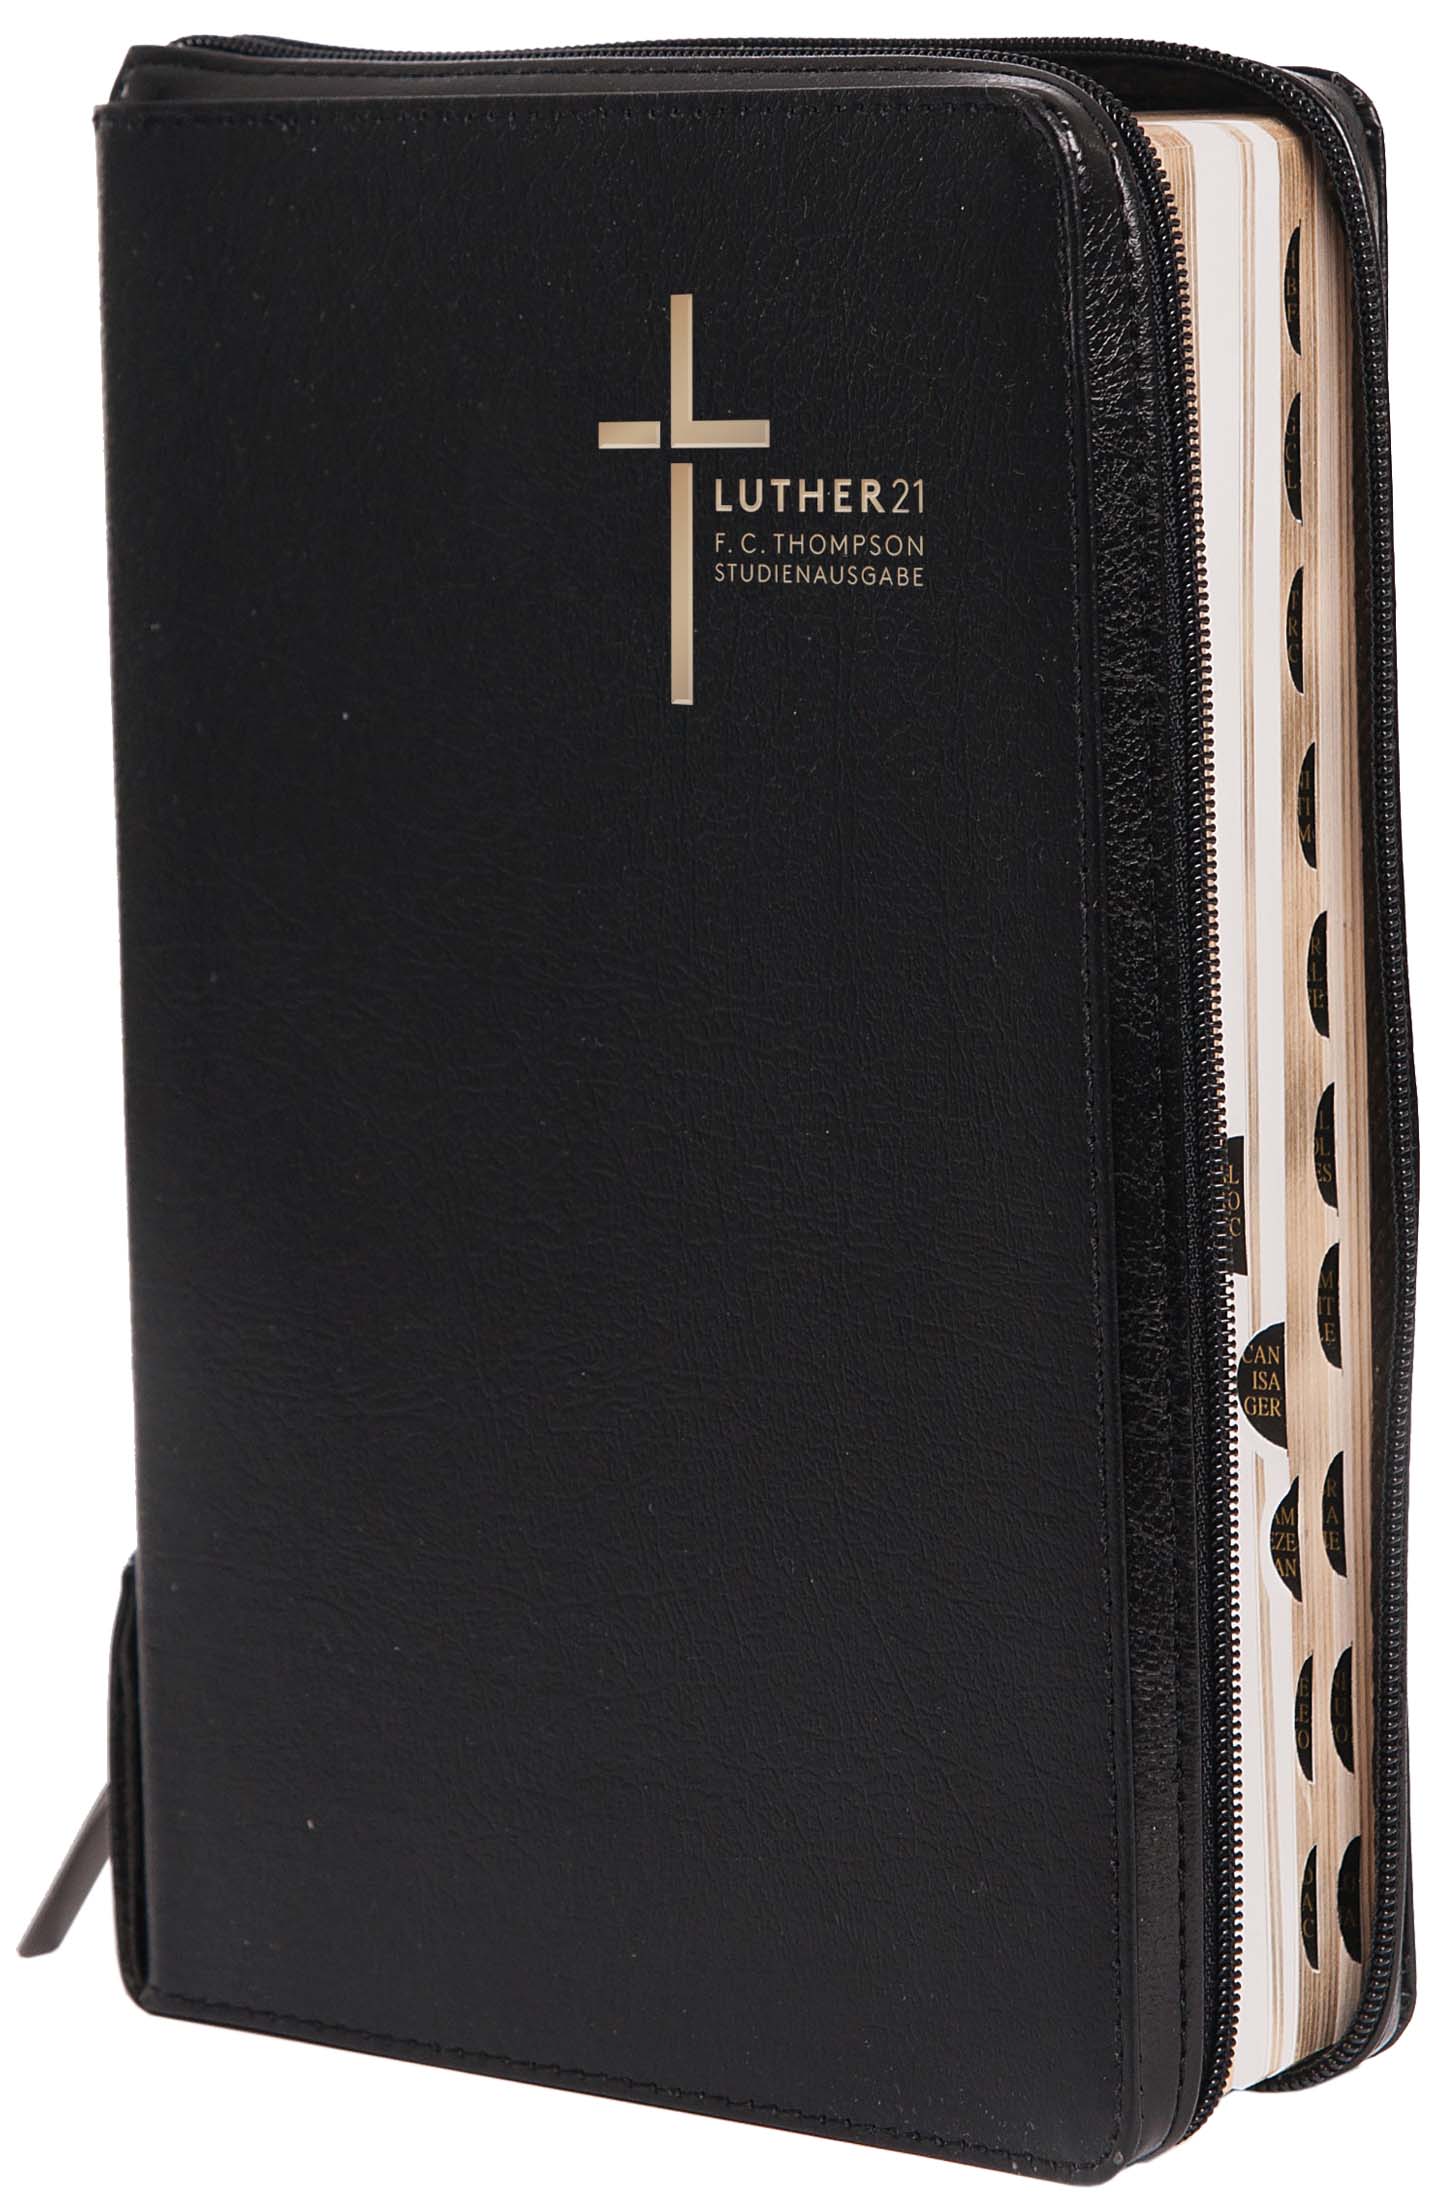 Luther21 F. C. Thompson Studienausgabe Cromwell Leder «schwarz», Goldschnitt mit Griffregister, Knop